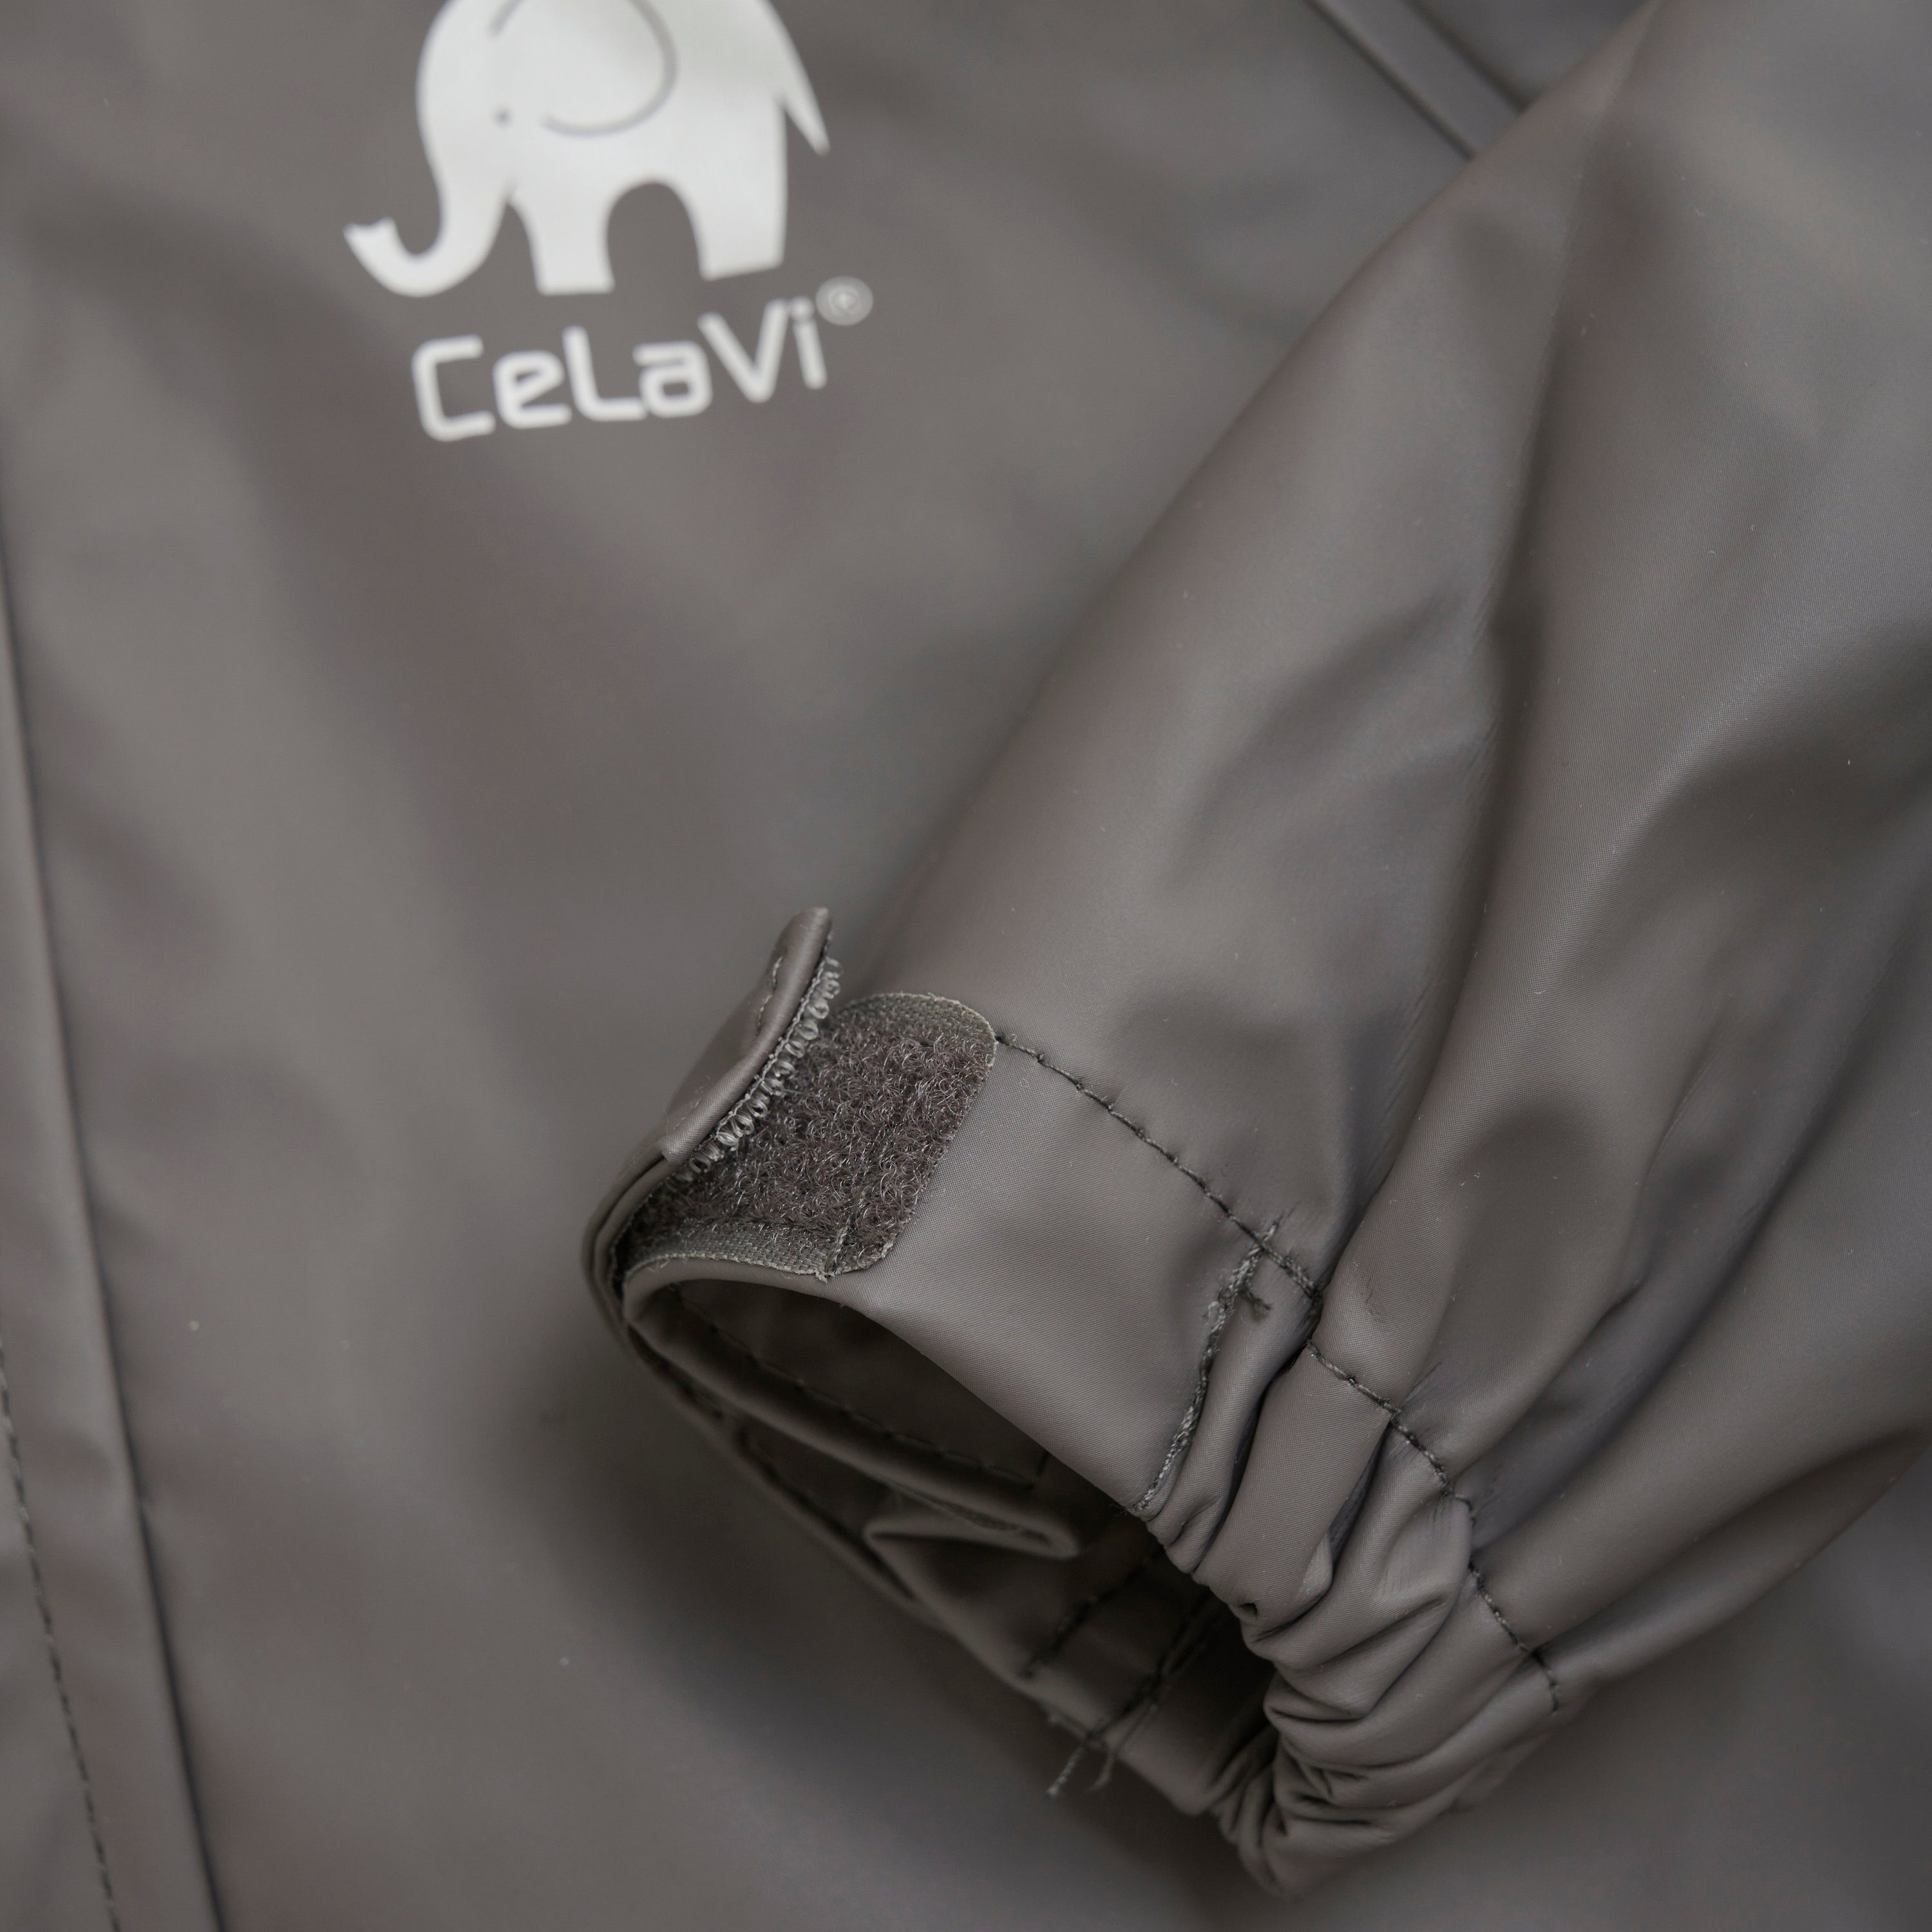 PU set (174) Regenoverall - CeLaVi 1145 Grey solid CEBasic rainwear